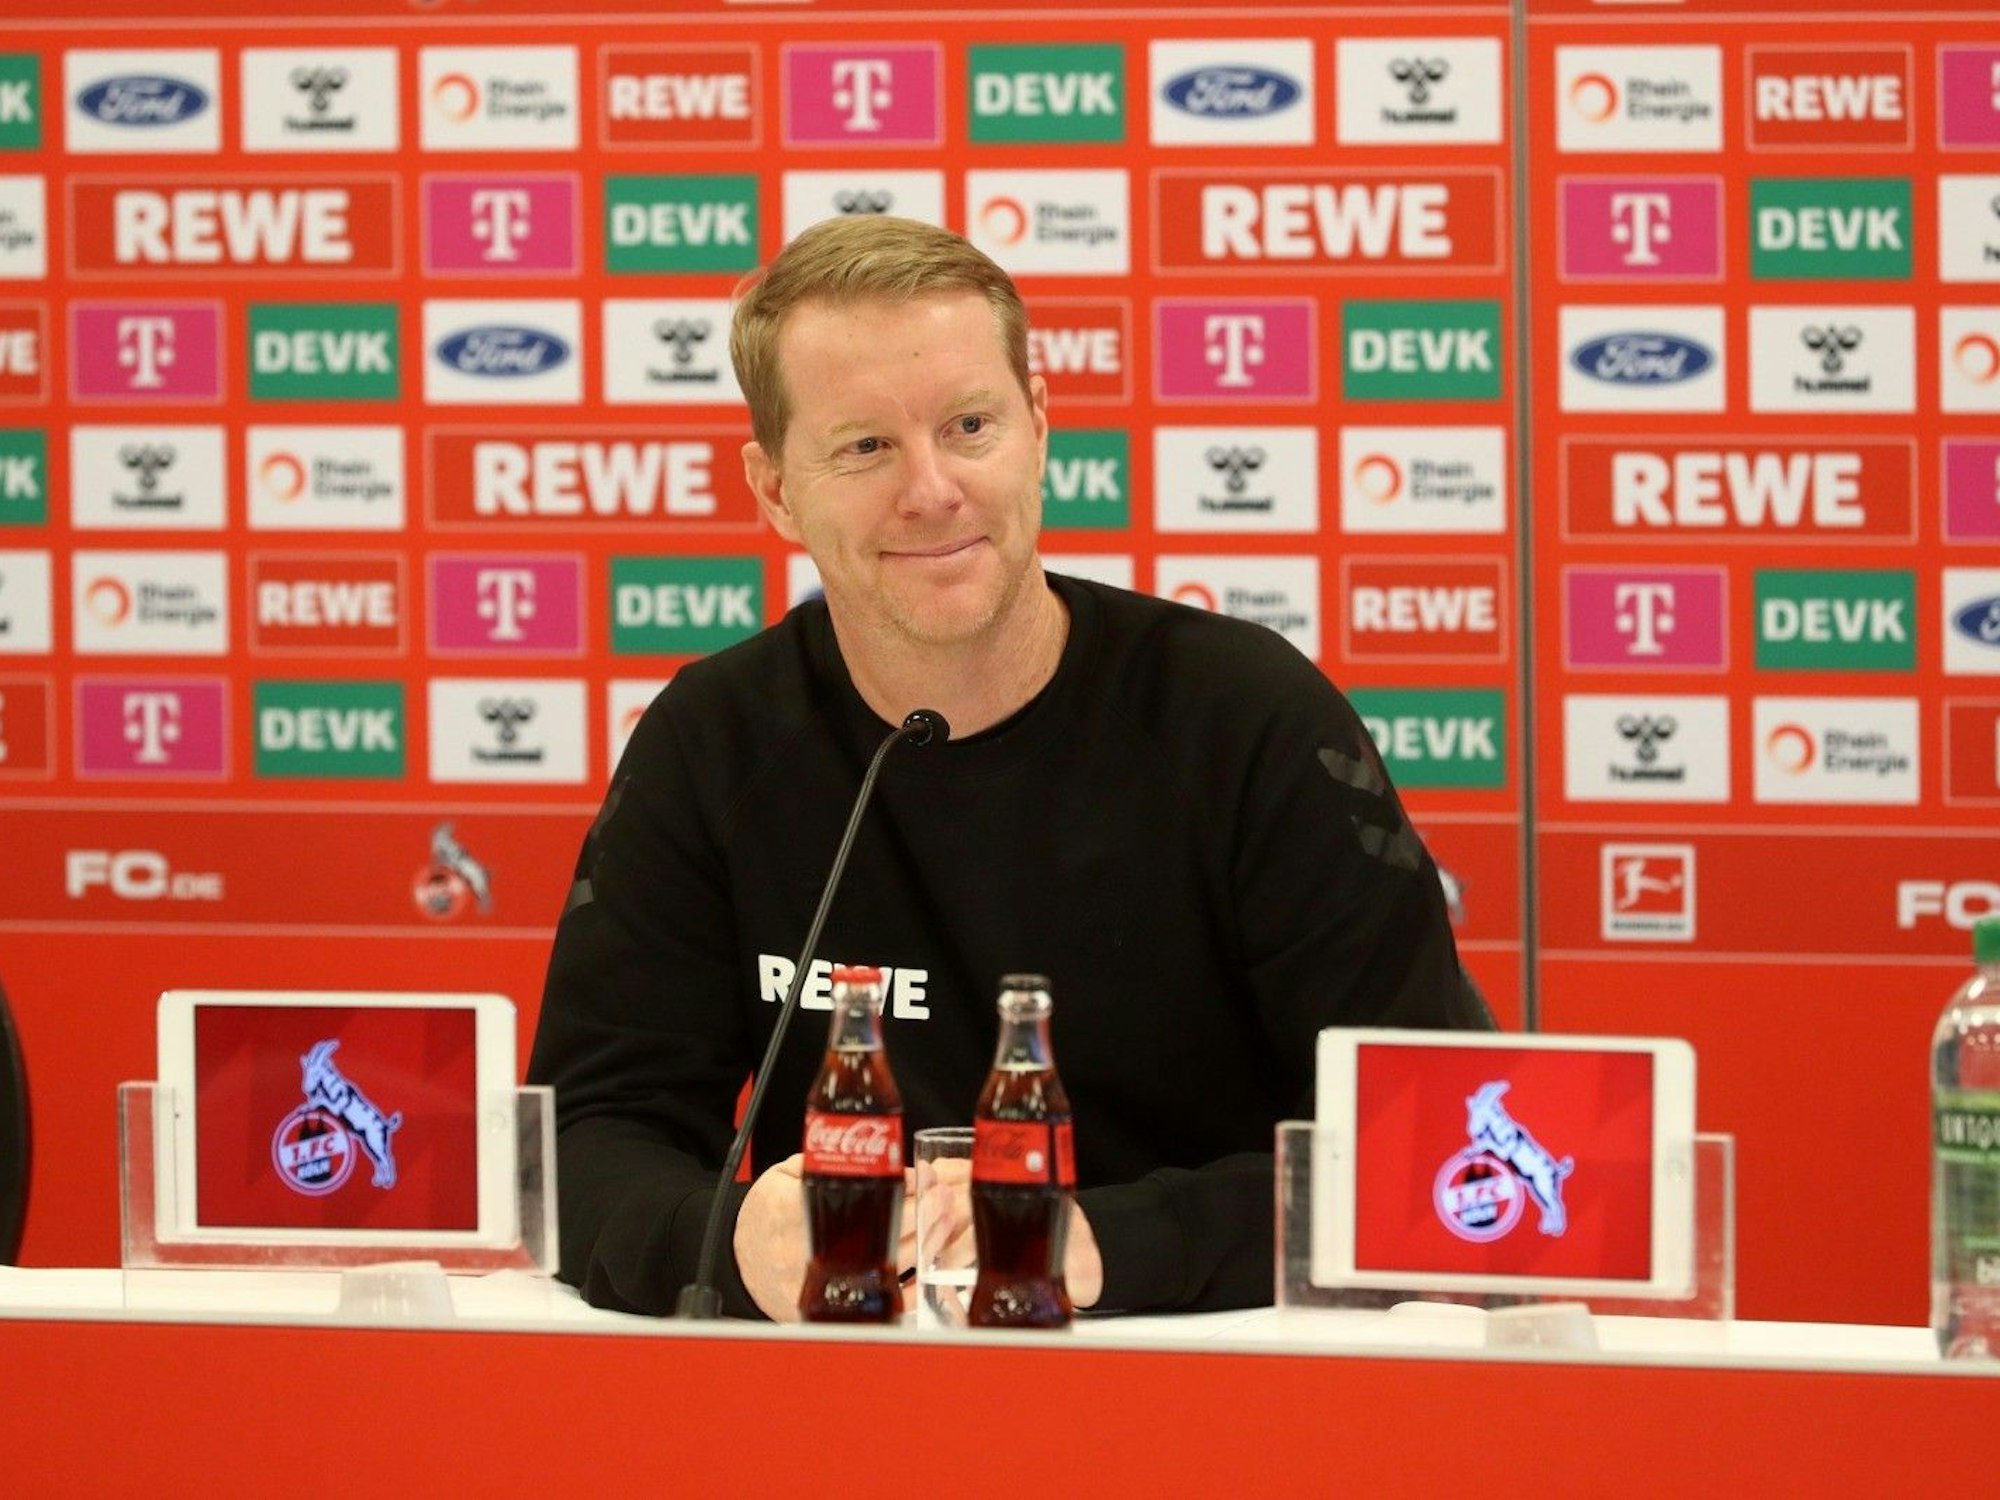 Timo Schultz lächelt während seiner ersten Pressekonferenz als Trainer des 1. FC Köln.